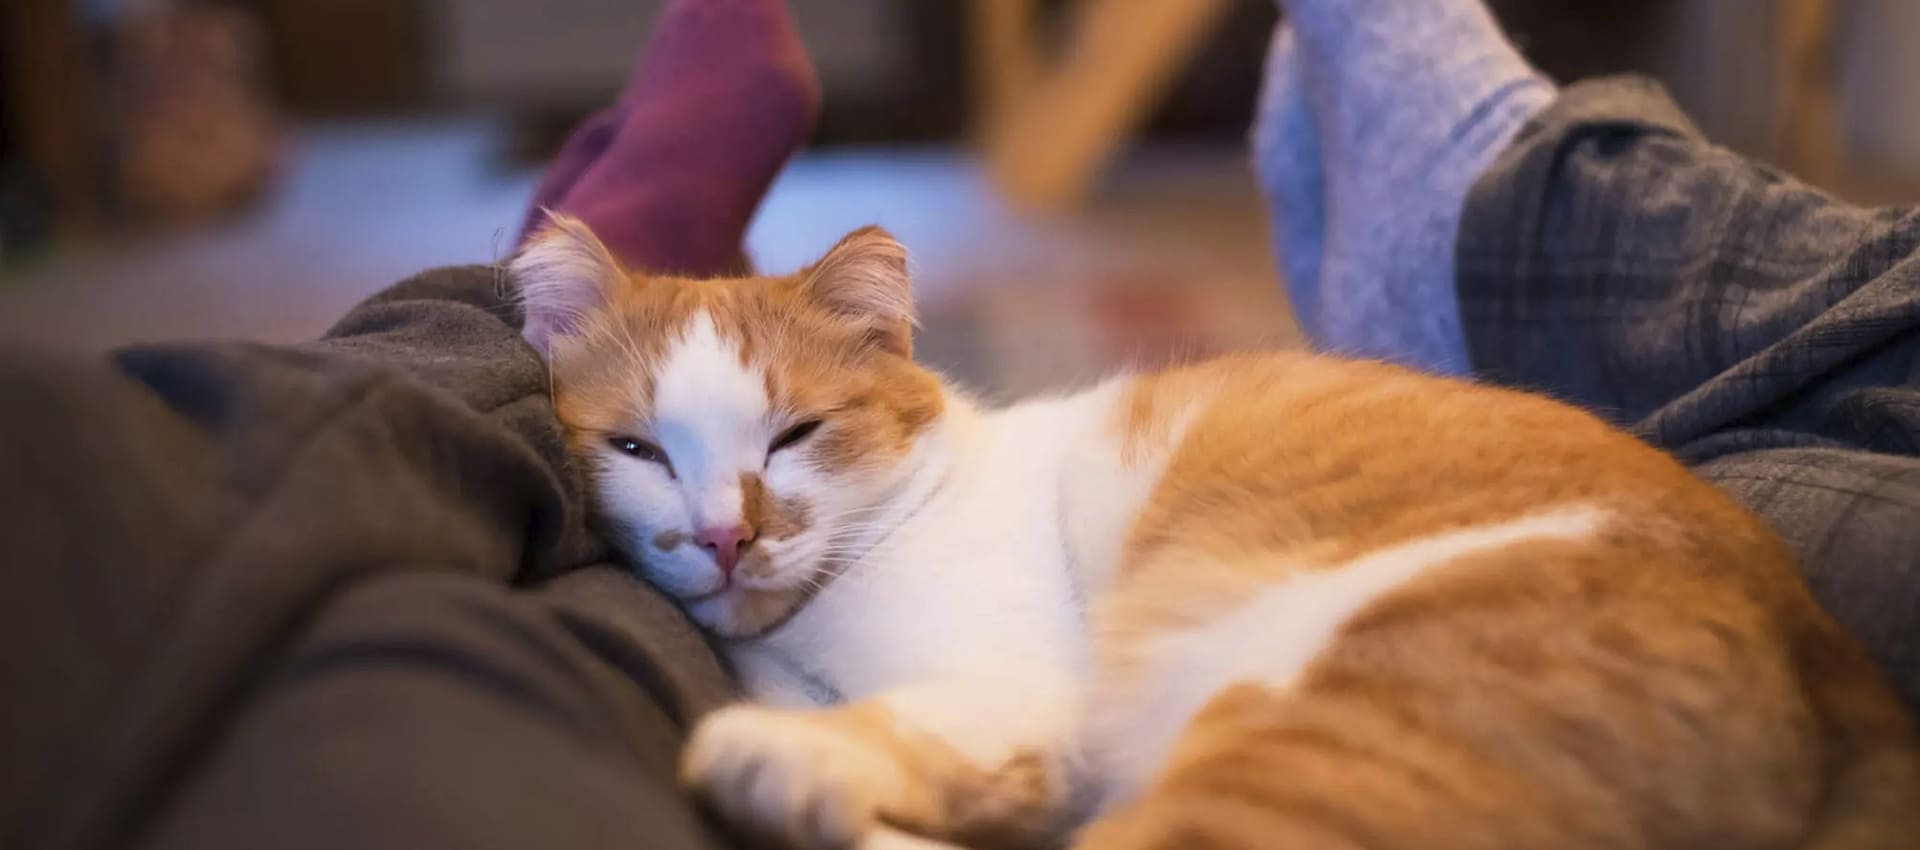 Почему кот спит в ногах? Возможные причины сна у человека в ногах